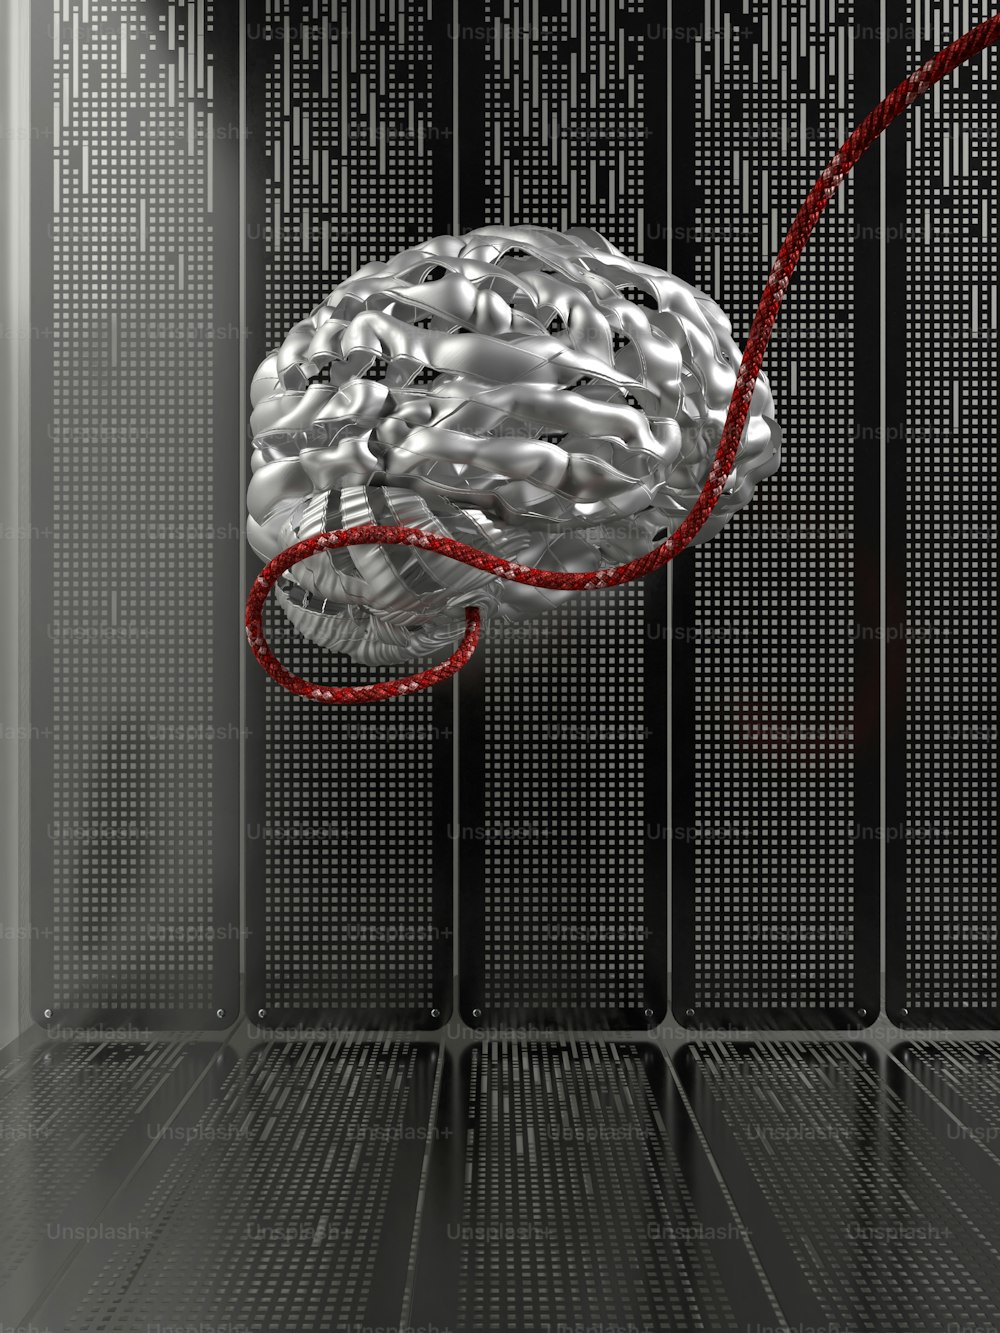 um cérebro em uma sala de servidores com um cordão vermelho conectado a ele